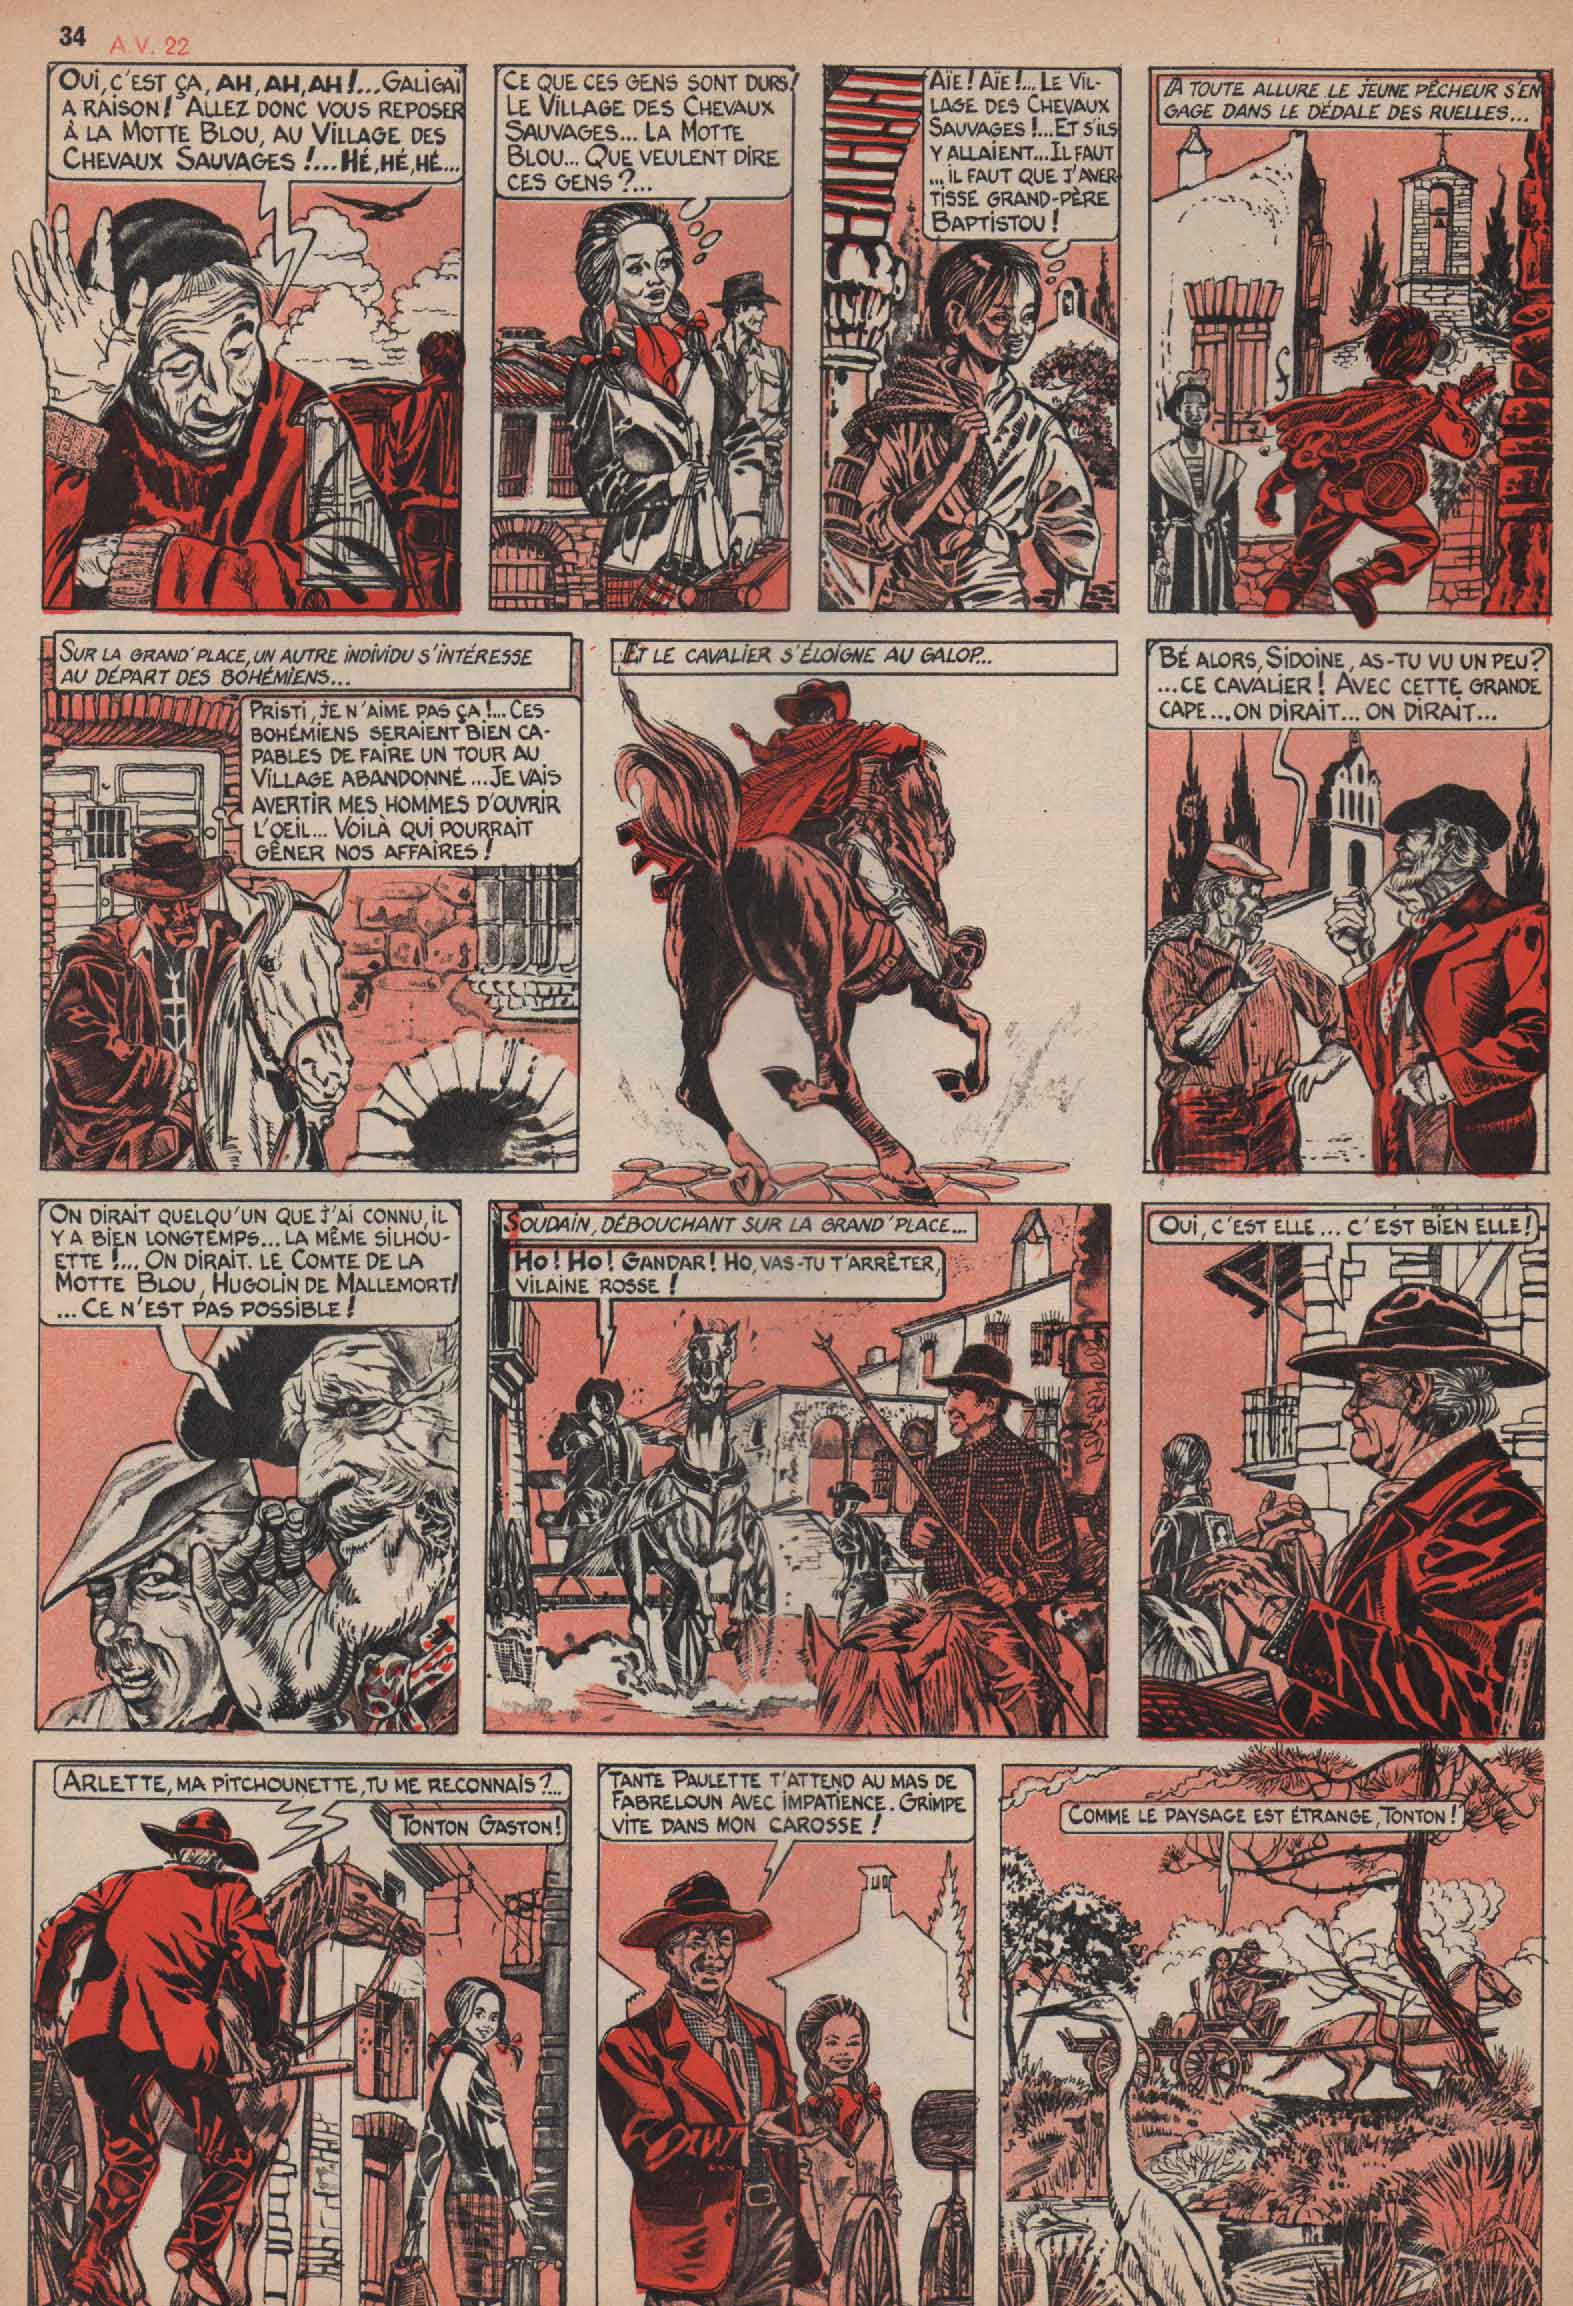 « Le Village des chevaux sauvages » Âmes vaillantes n° 22 (30/05/1963).